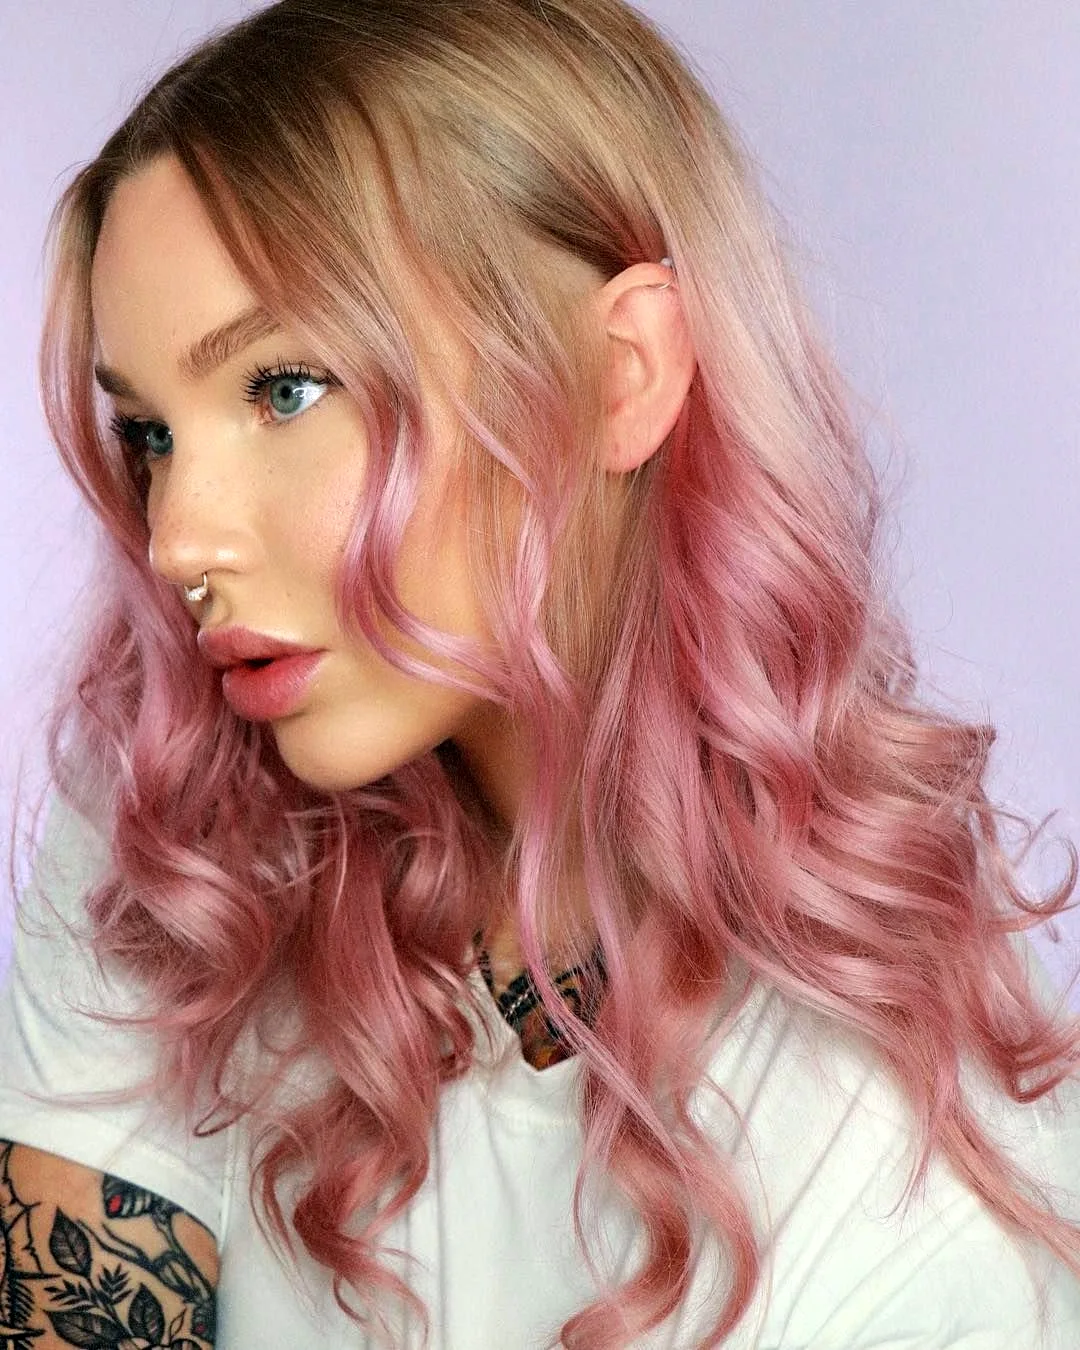 окрашивание волос в розовый цвет фото